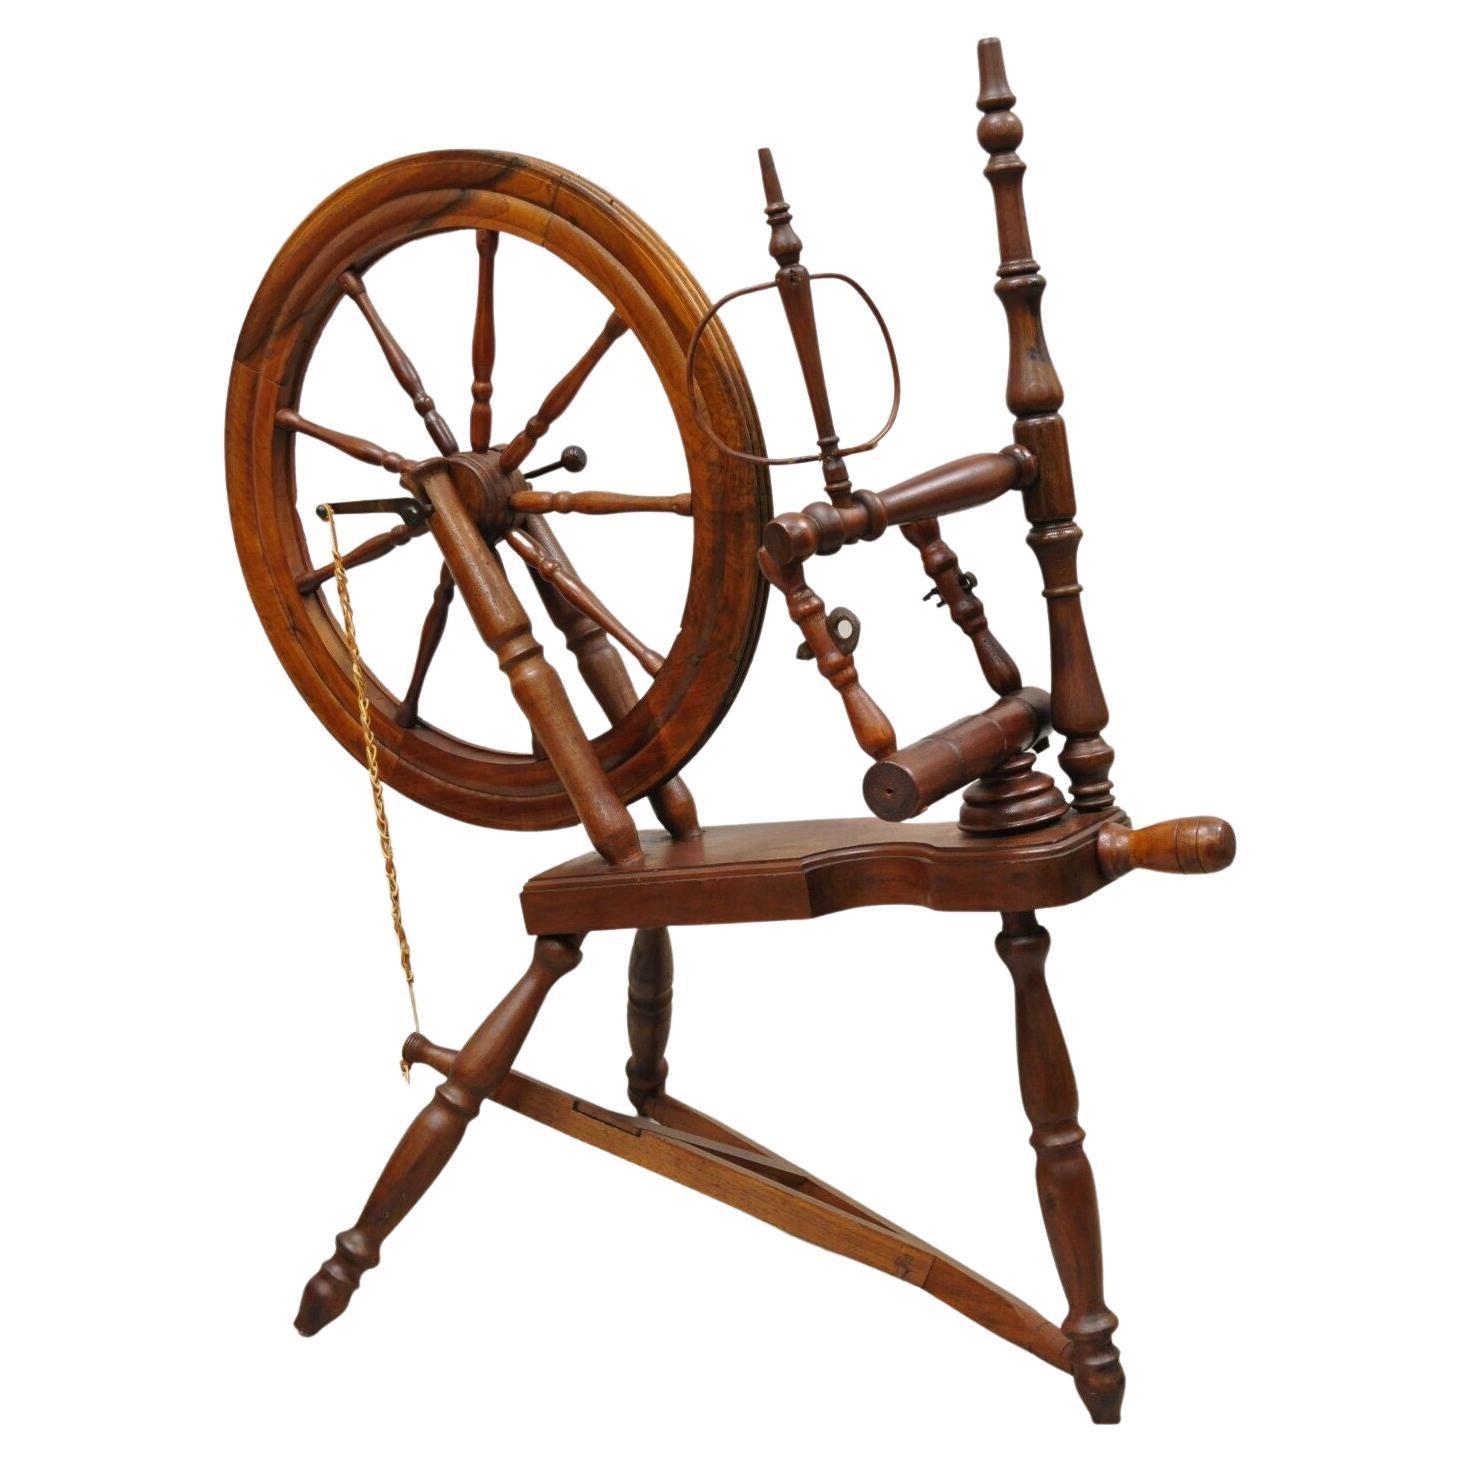 roue de tournage coloniale ancienne en bois de style primitif canadien